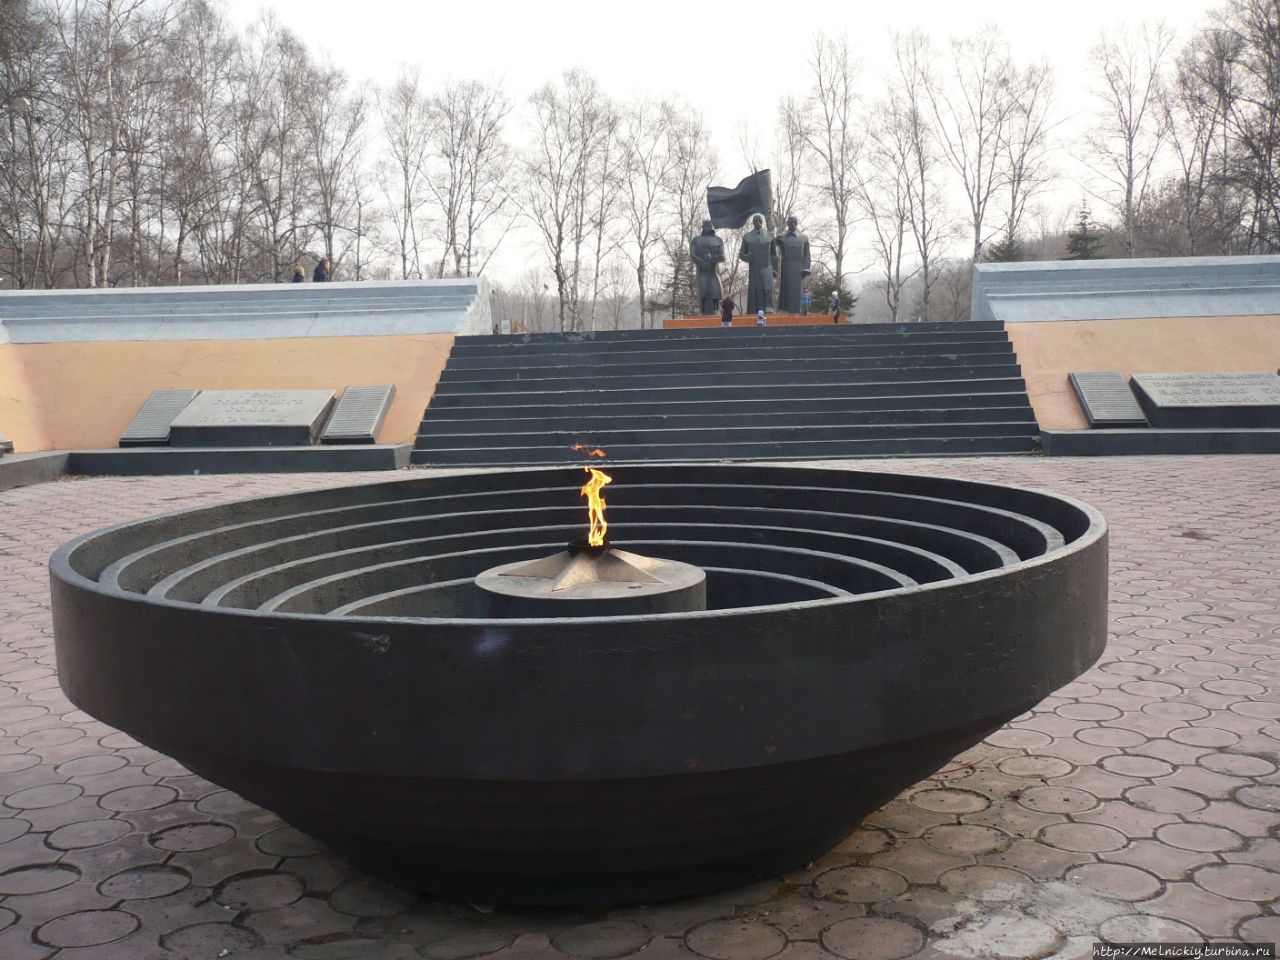 Мемориал воинам Великой Отечественной войны